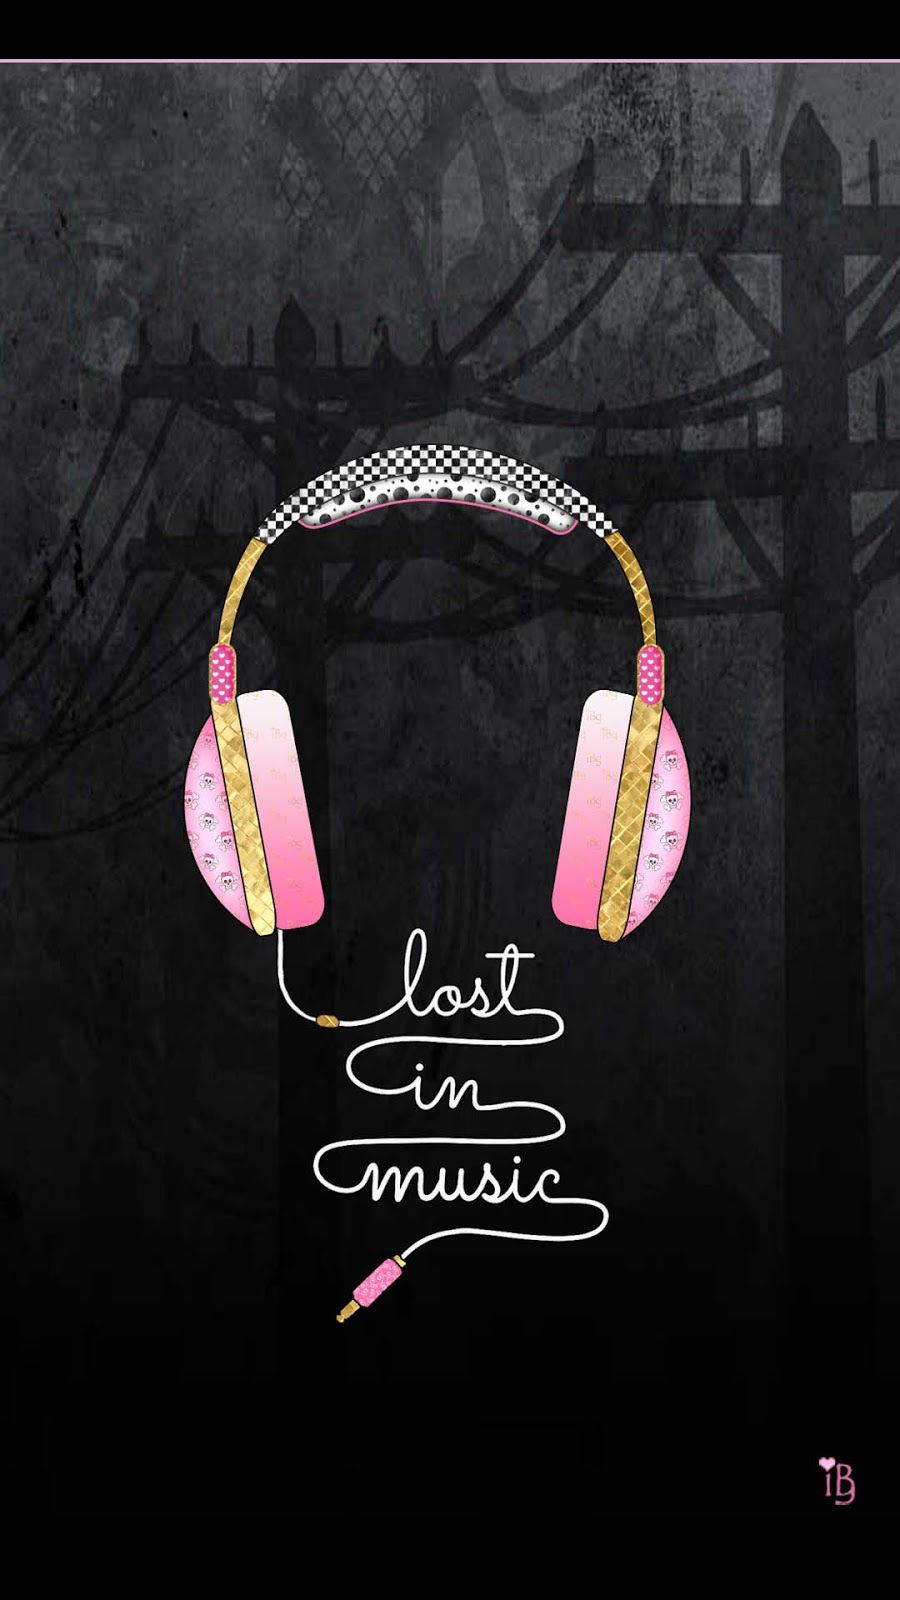 sfondi musicali carini,rosa,cuffie,equipaggiamento audio,testo,orecchio